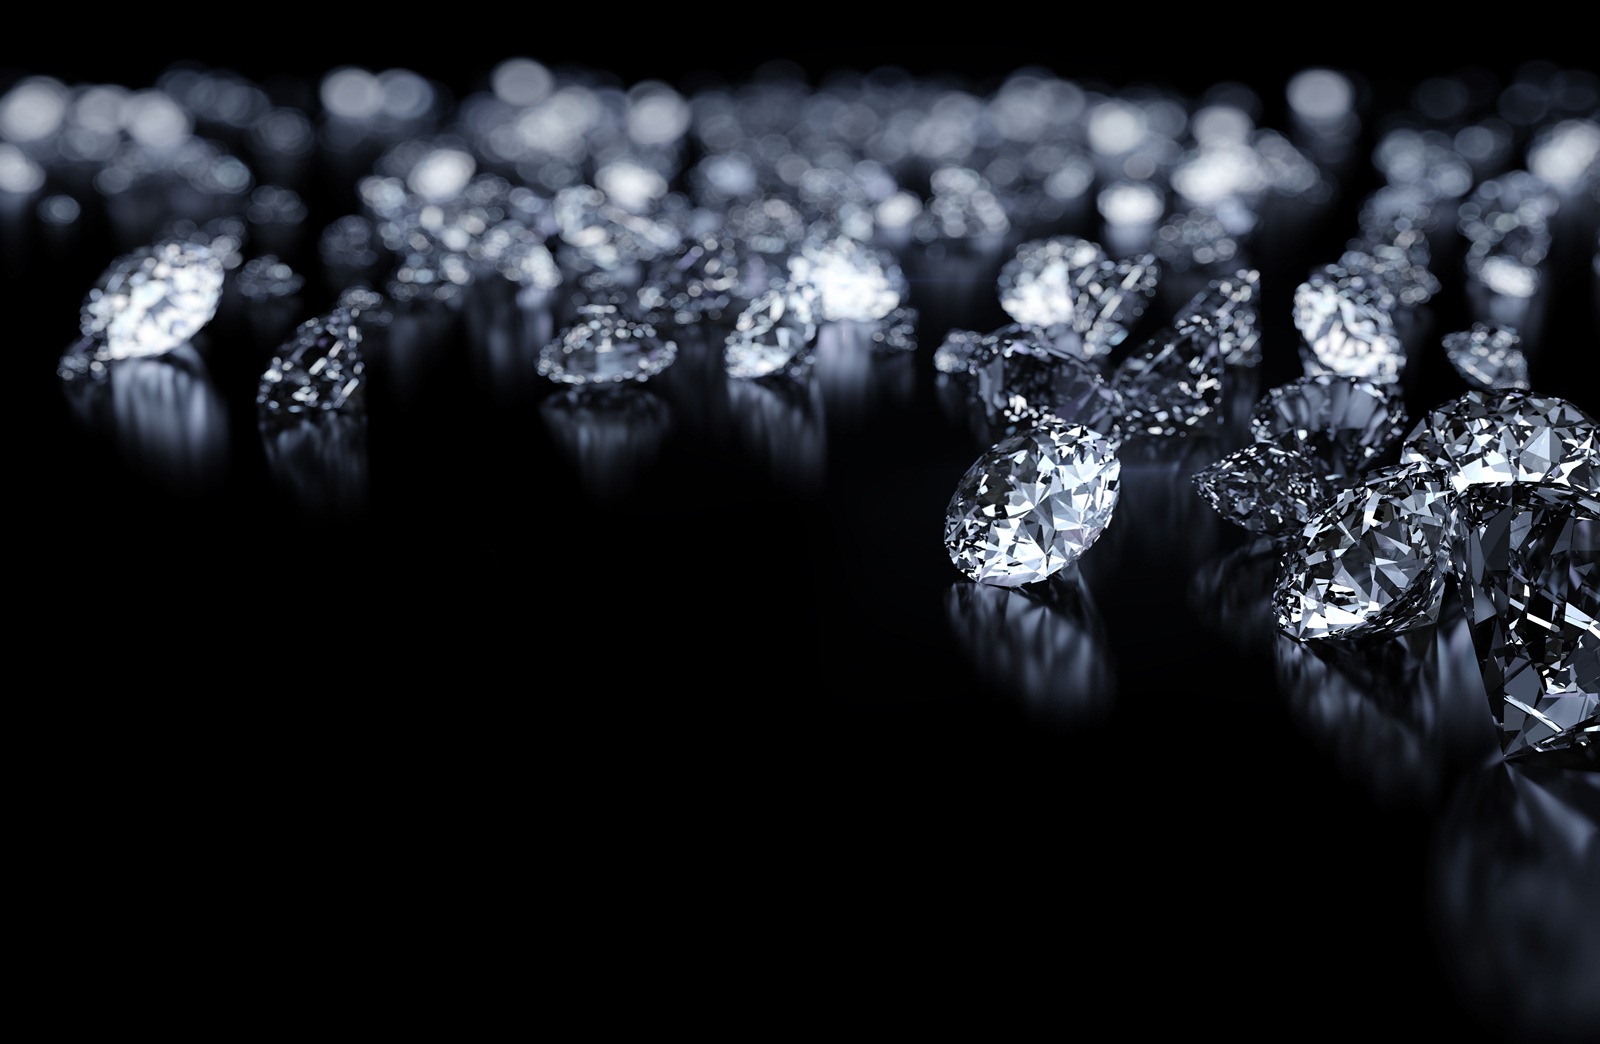 Kim cương vẫn luôn là một đối tượng nghiên cứu hấp dẫn đối với các nhà khoa học